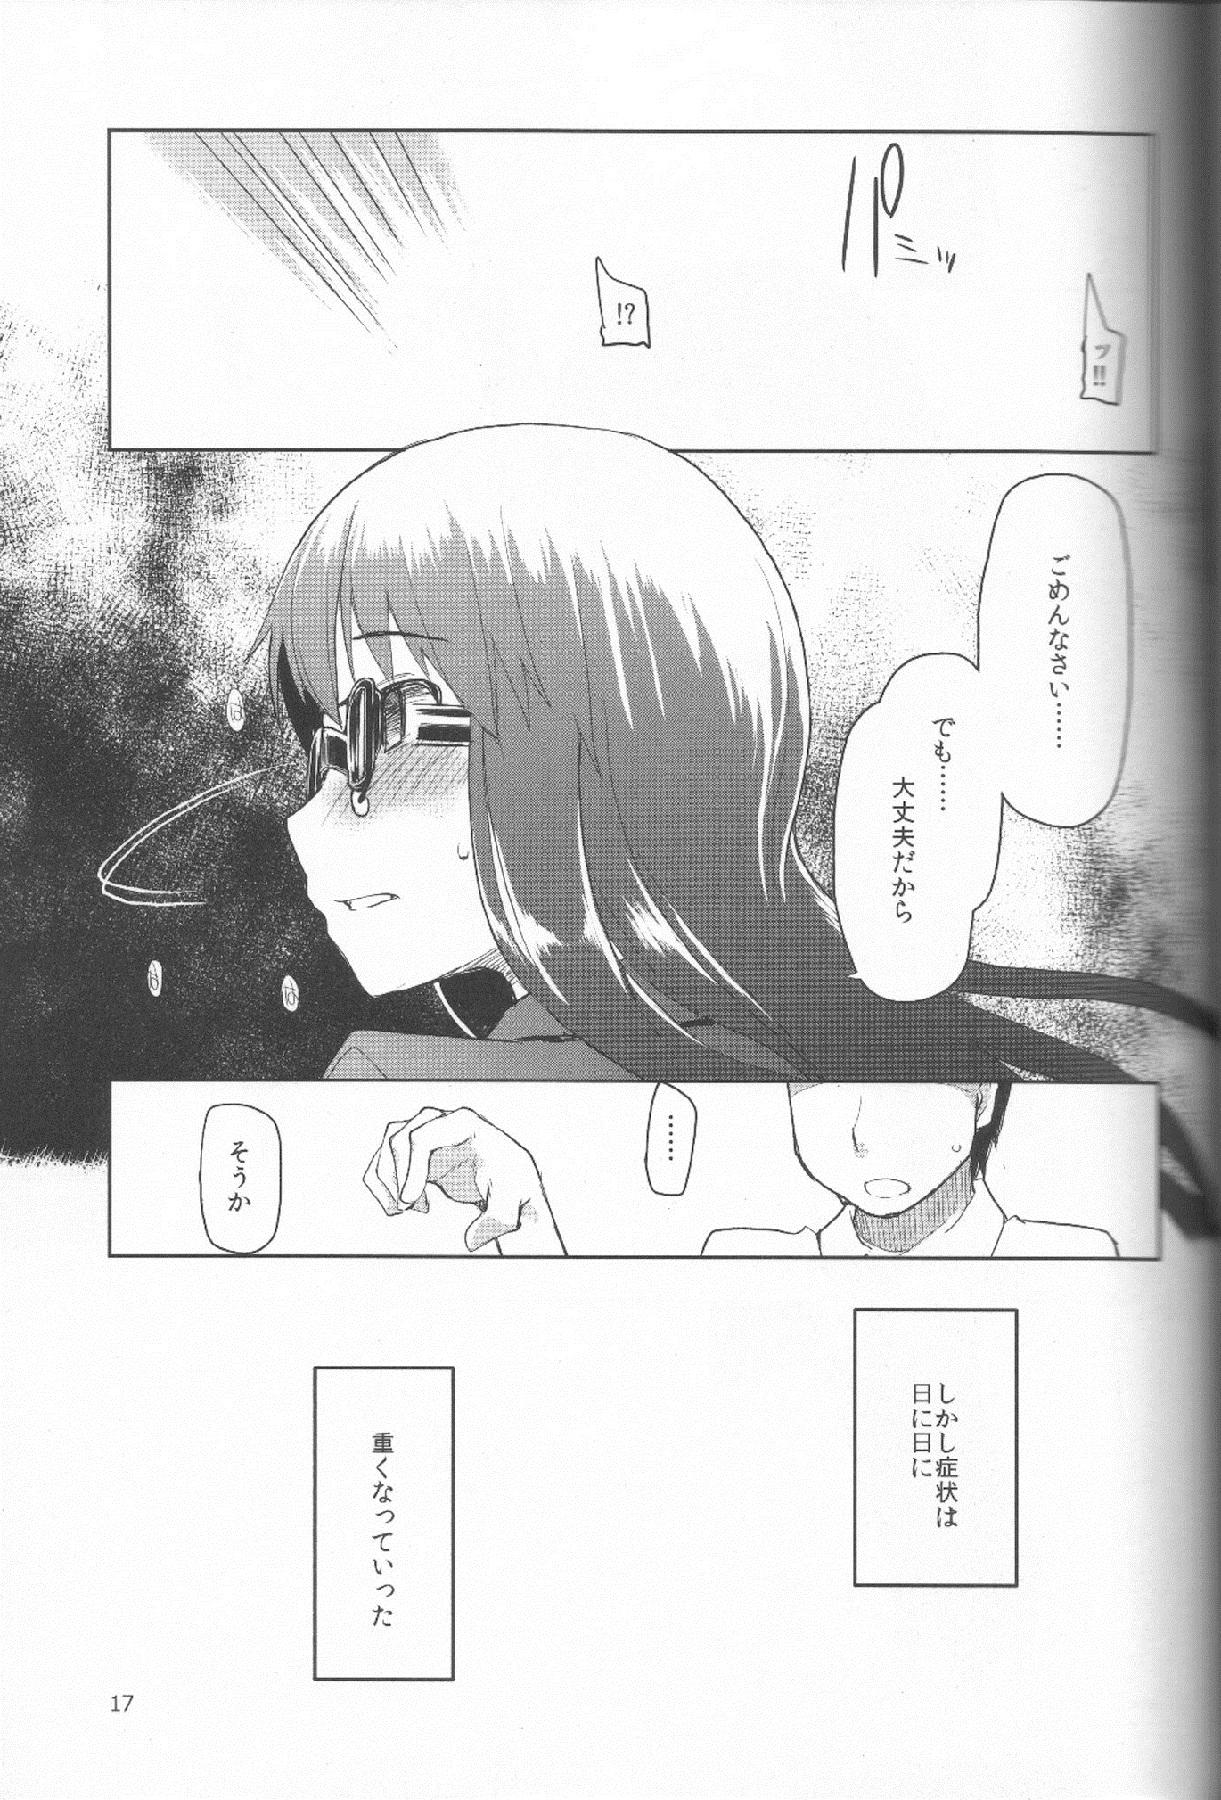 Natsuzuka san no Himitsu. Vol.1 Deai Hen 17